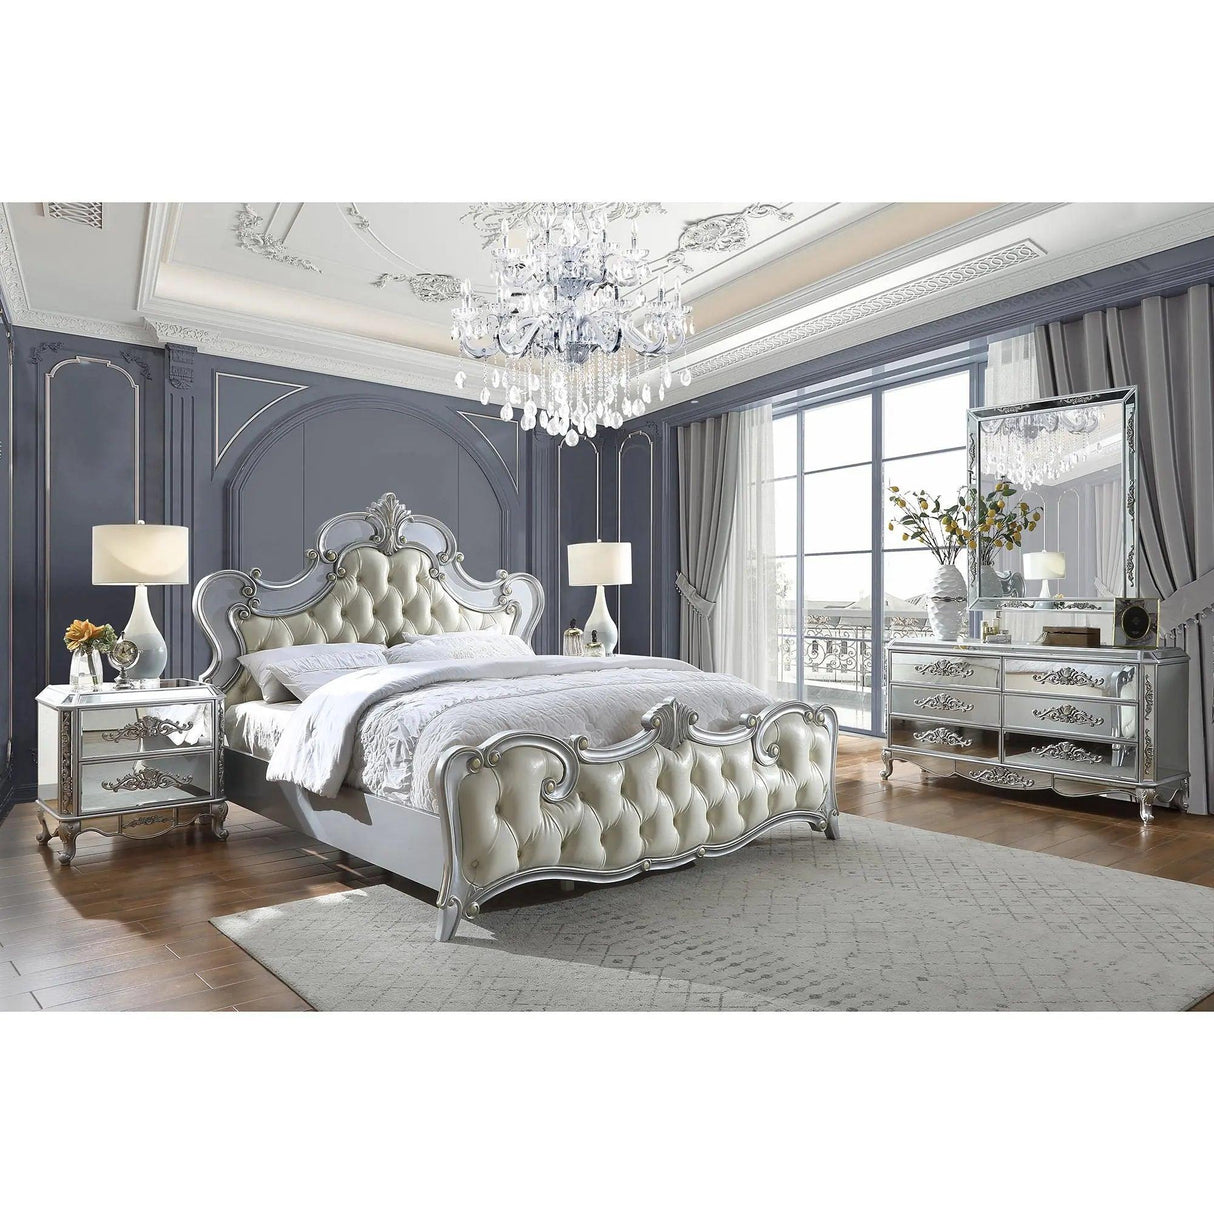 HD-6036 Bedroom Set by Homey Design Homey Design Furniture